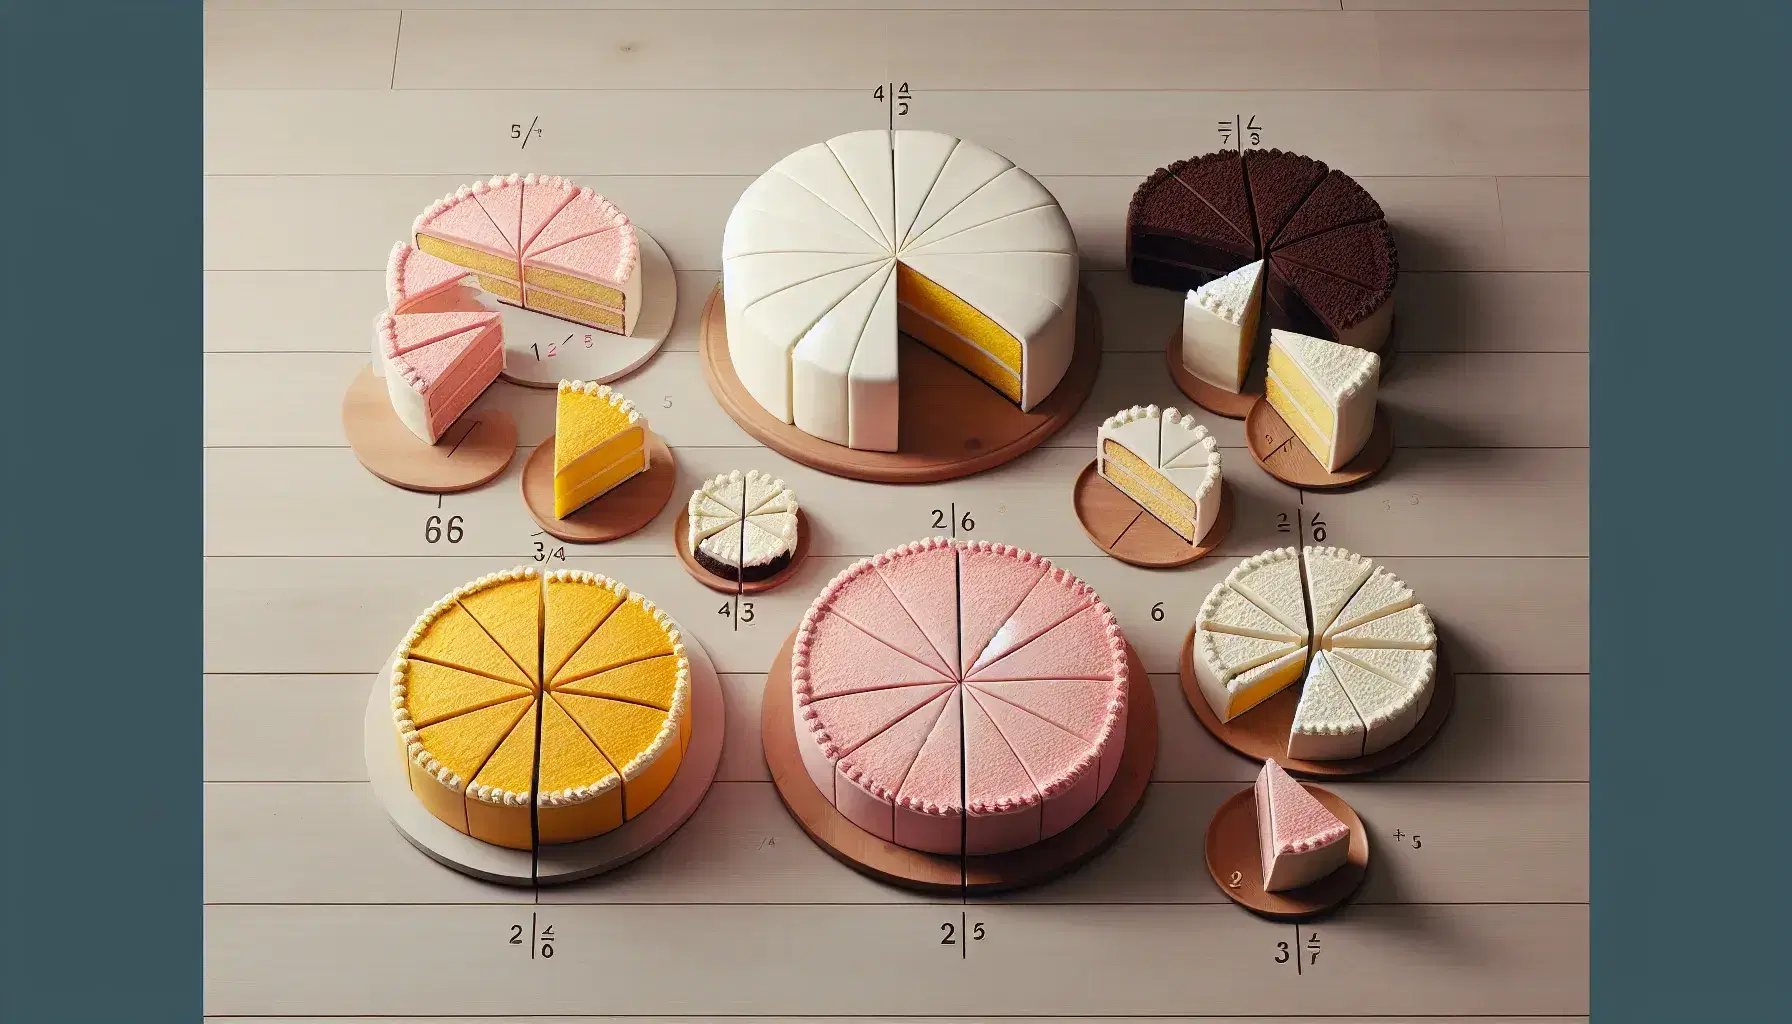 Torte rotonde in varie dimensioni e colori su tavolo in legno chiaro, divise in fette per illustrare frazioni matematiche.